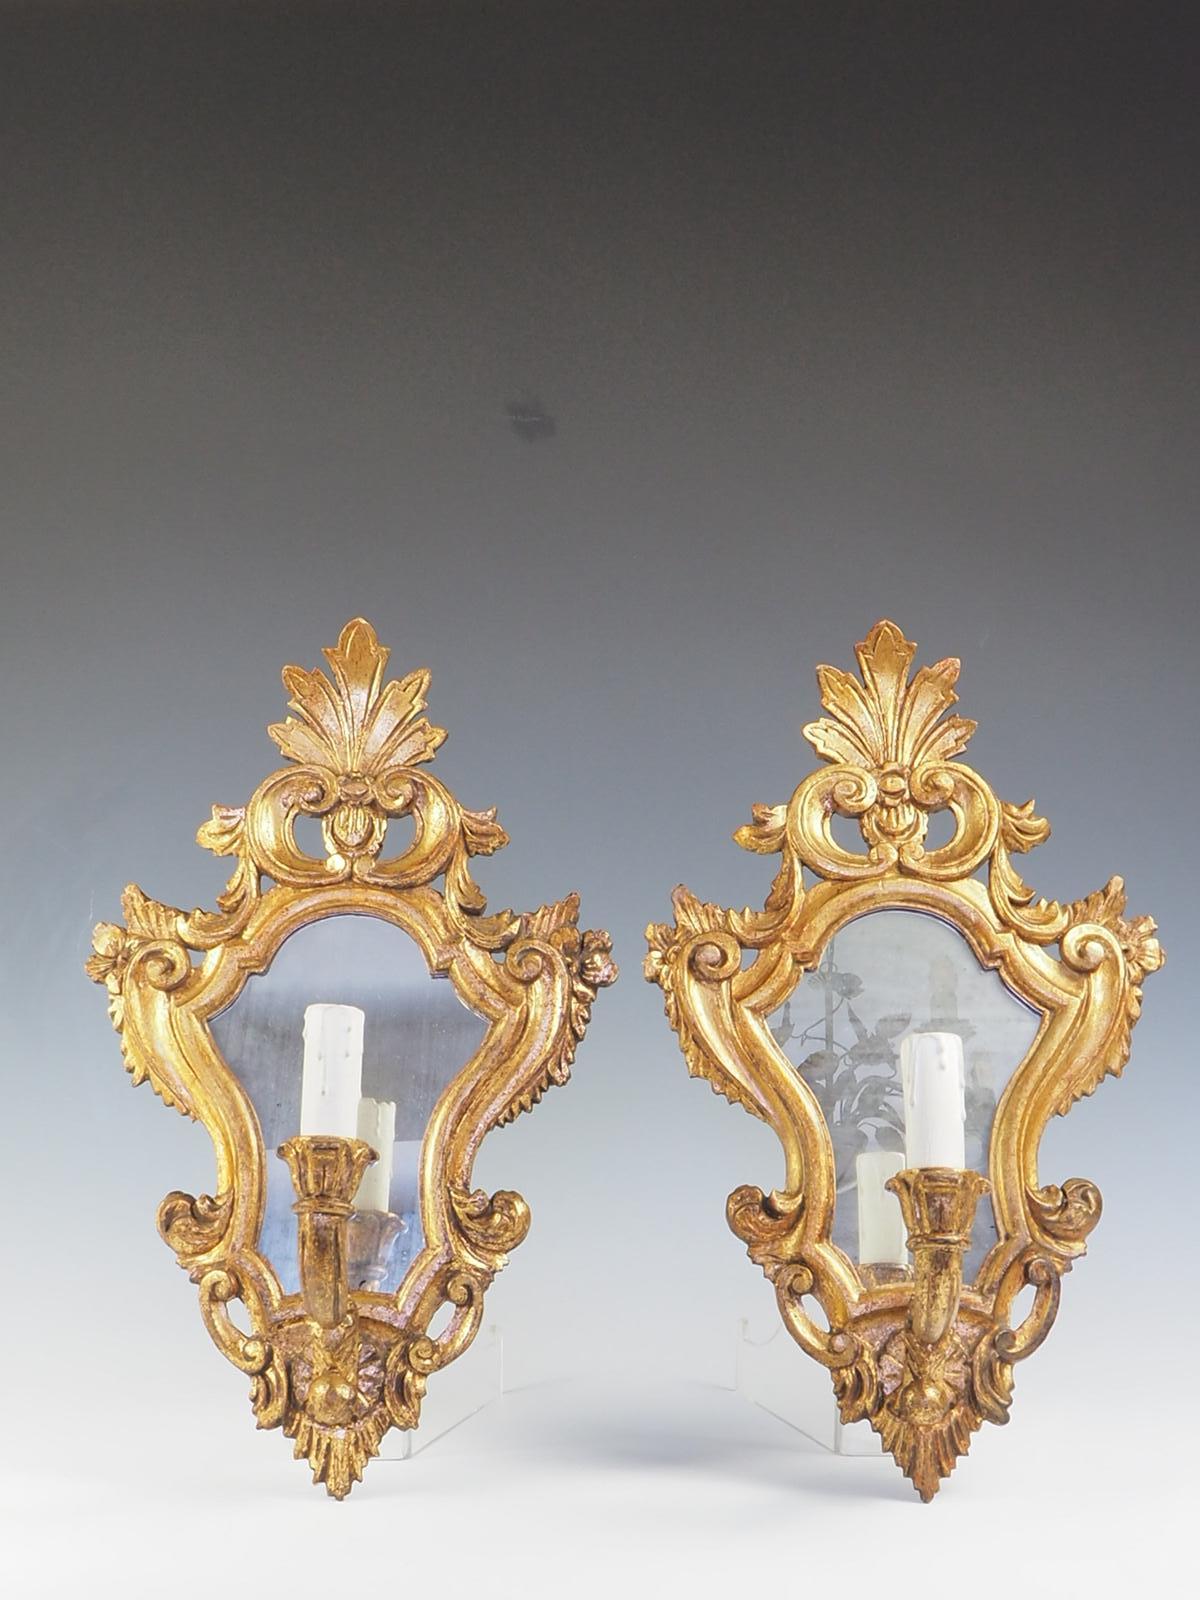 Une superbe paire de miroirs muraux vénitiens 